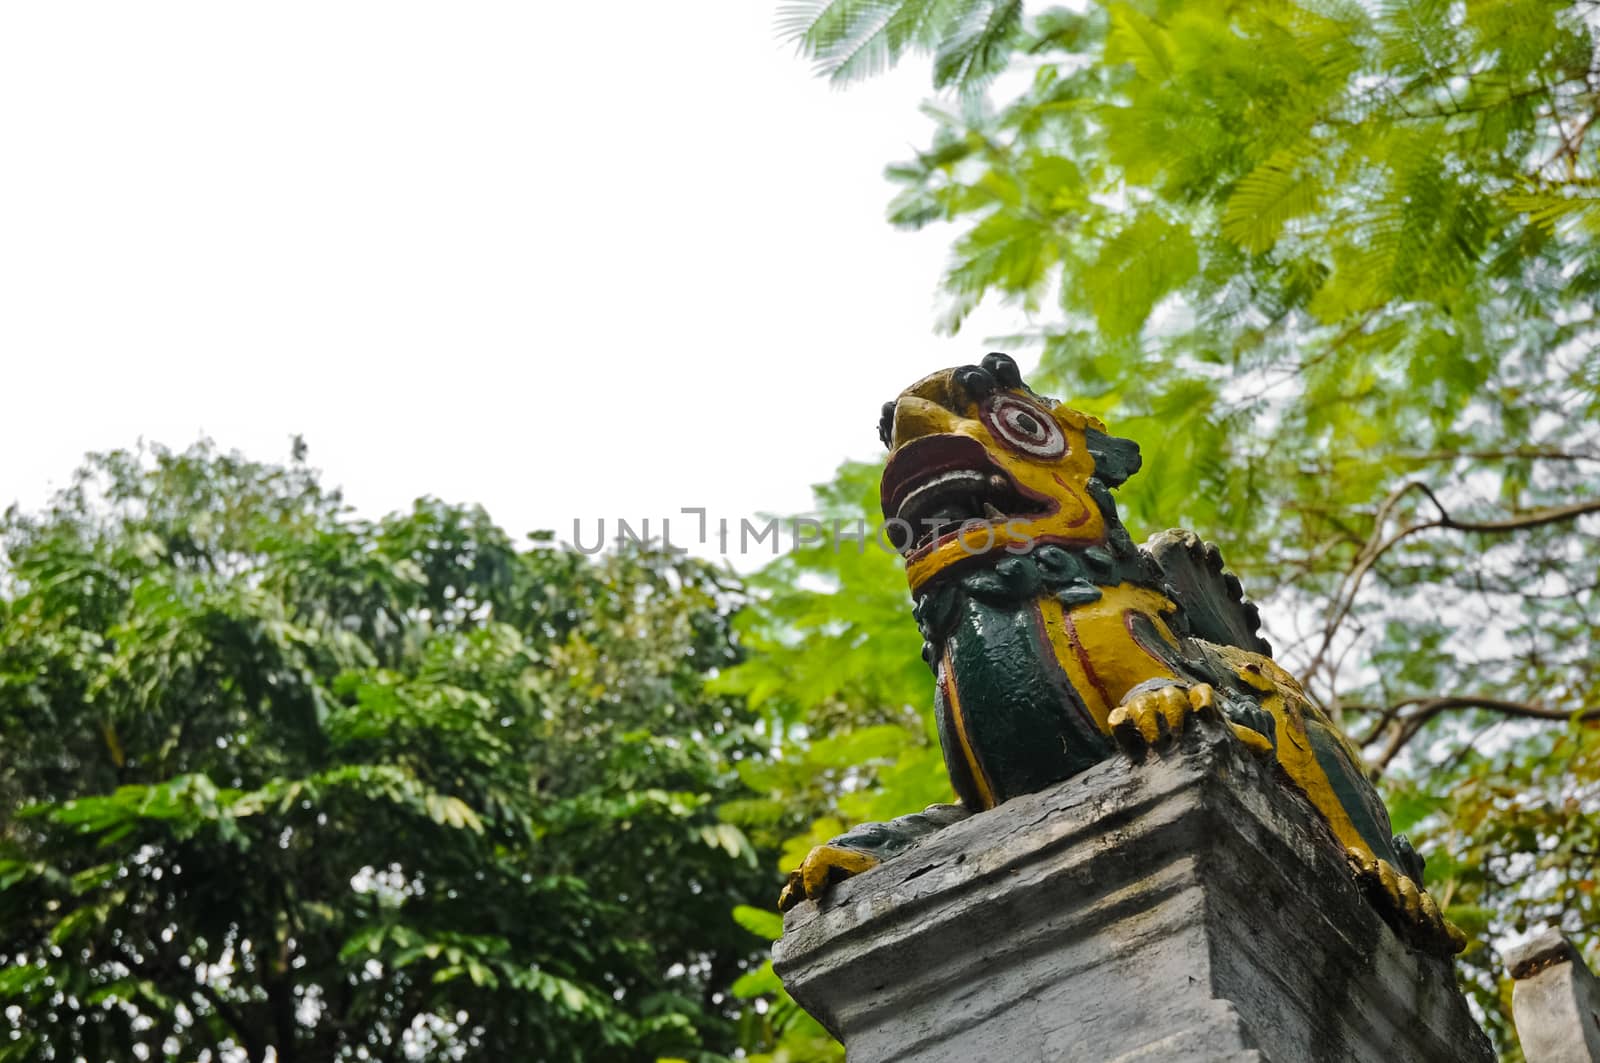 Vietnamese dragon sculpture on an old pillar in Hanoi